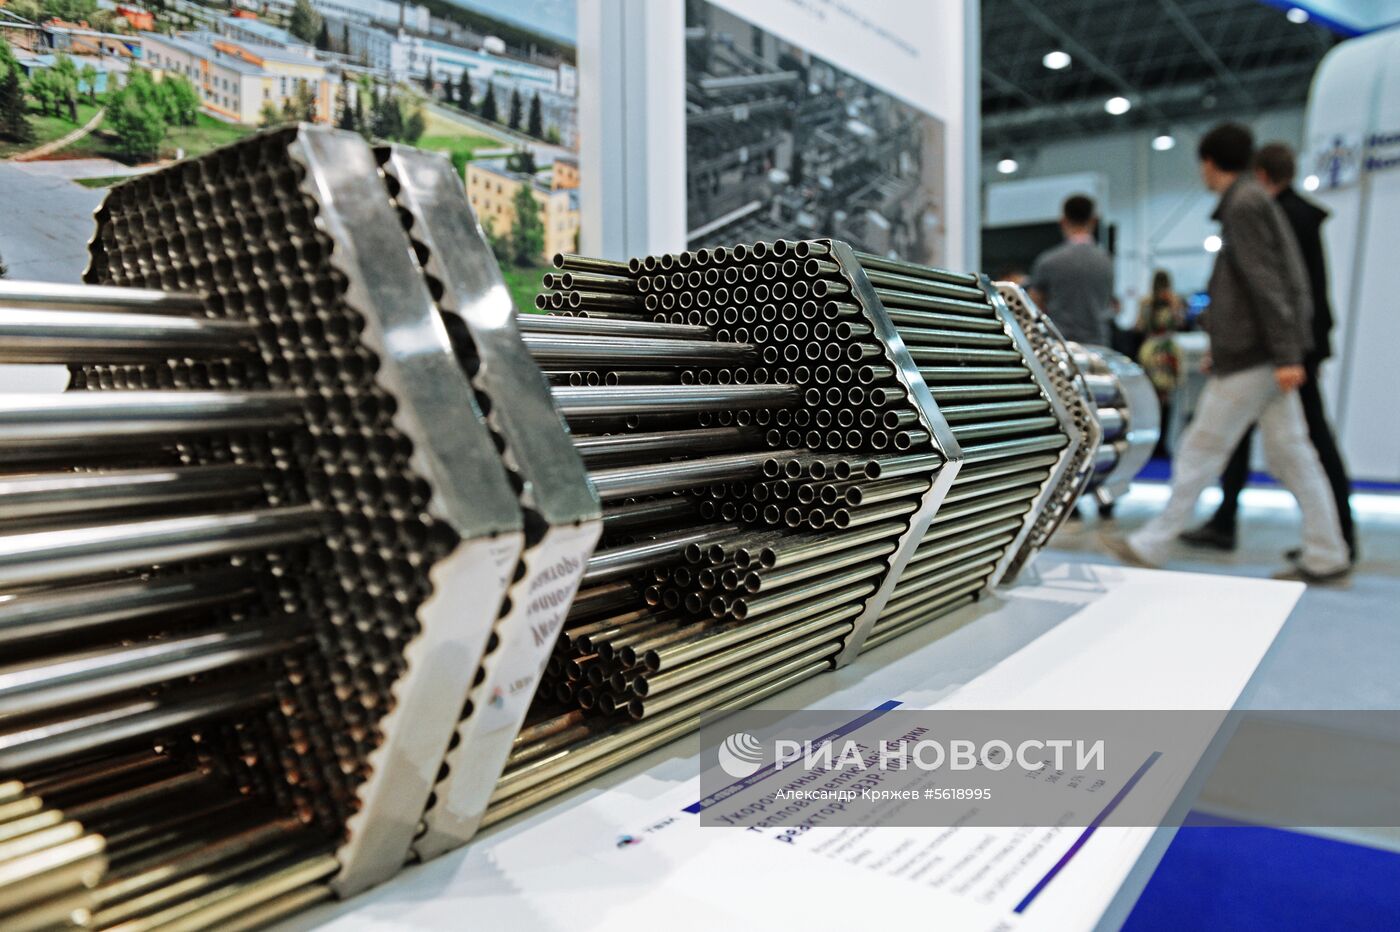 VI Международный форум и выставка технологического развития "Технопром-2018"